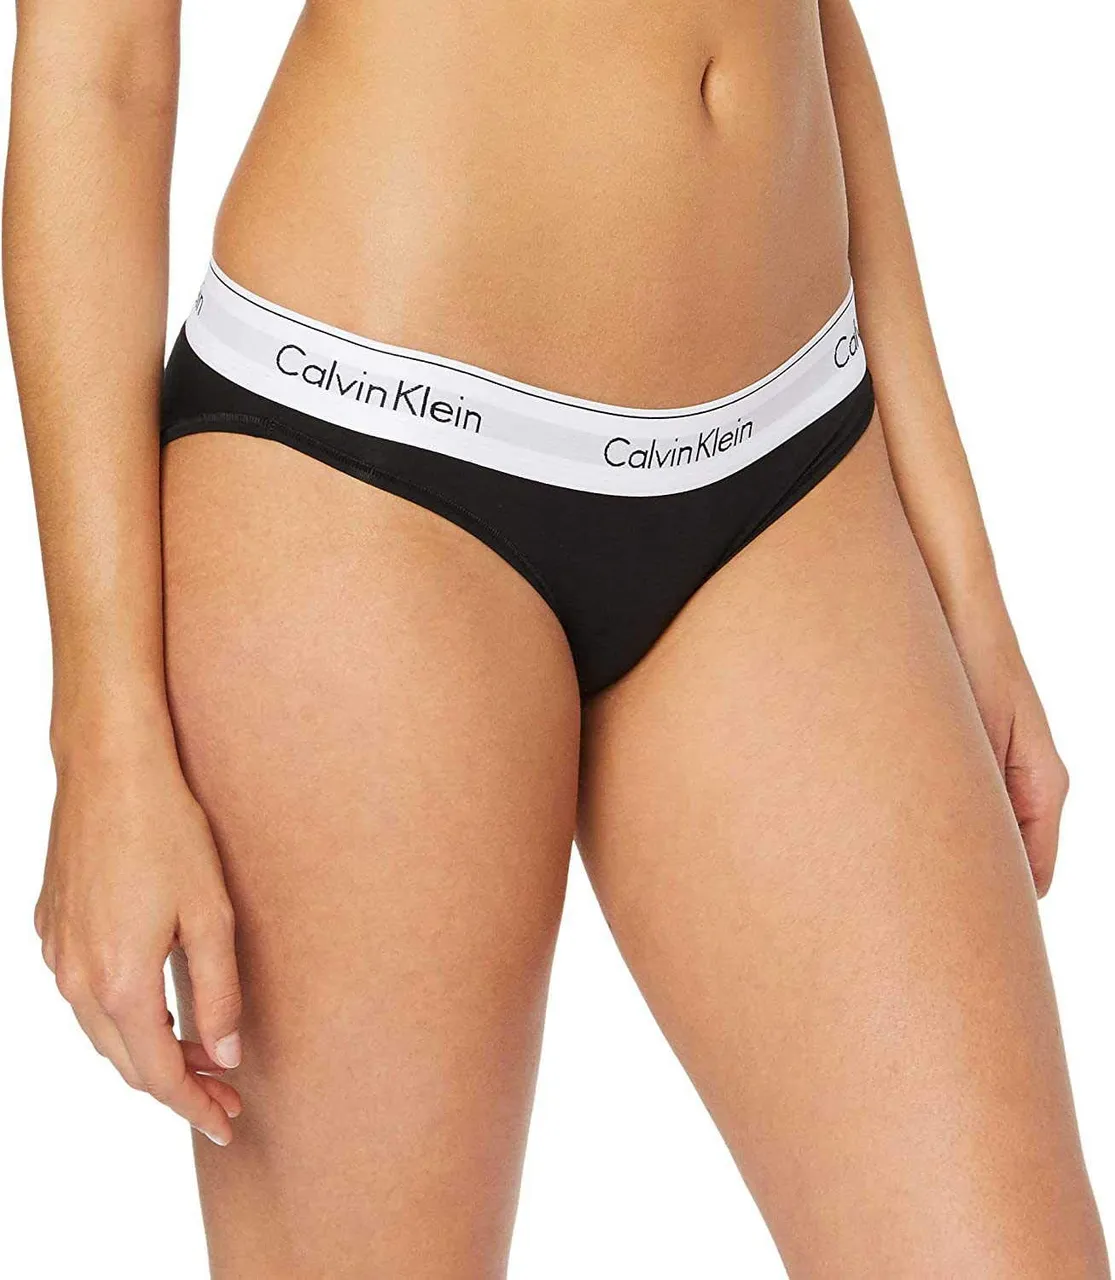 Calvin Klein - Women's Underwear - Bikini Brief - Modern